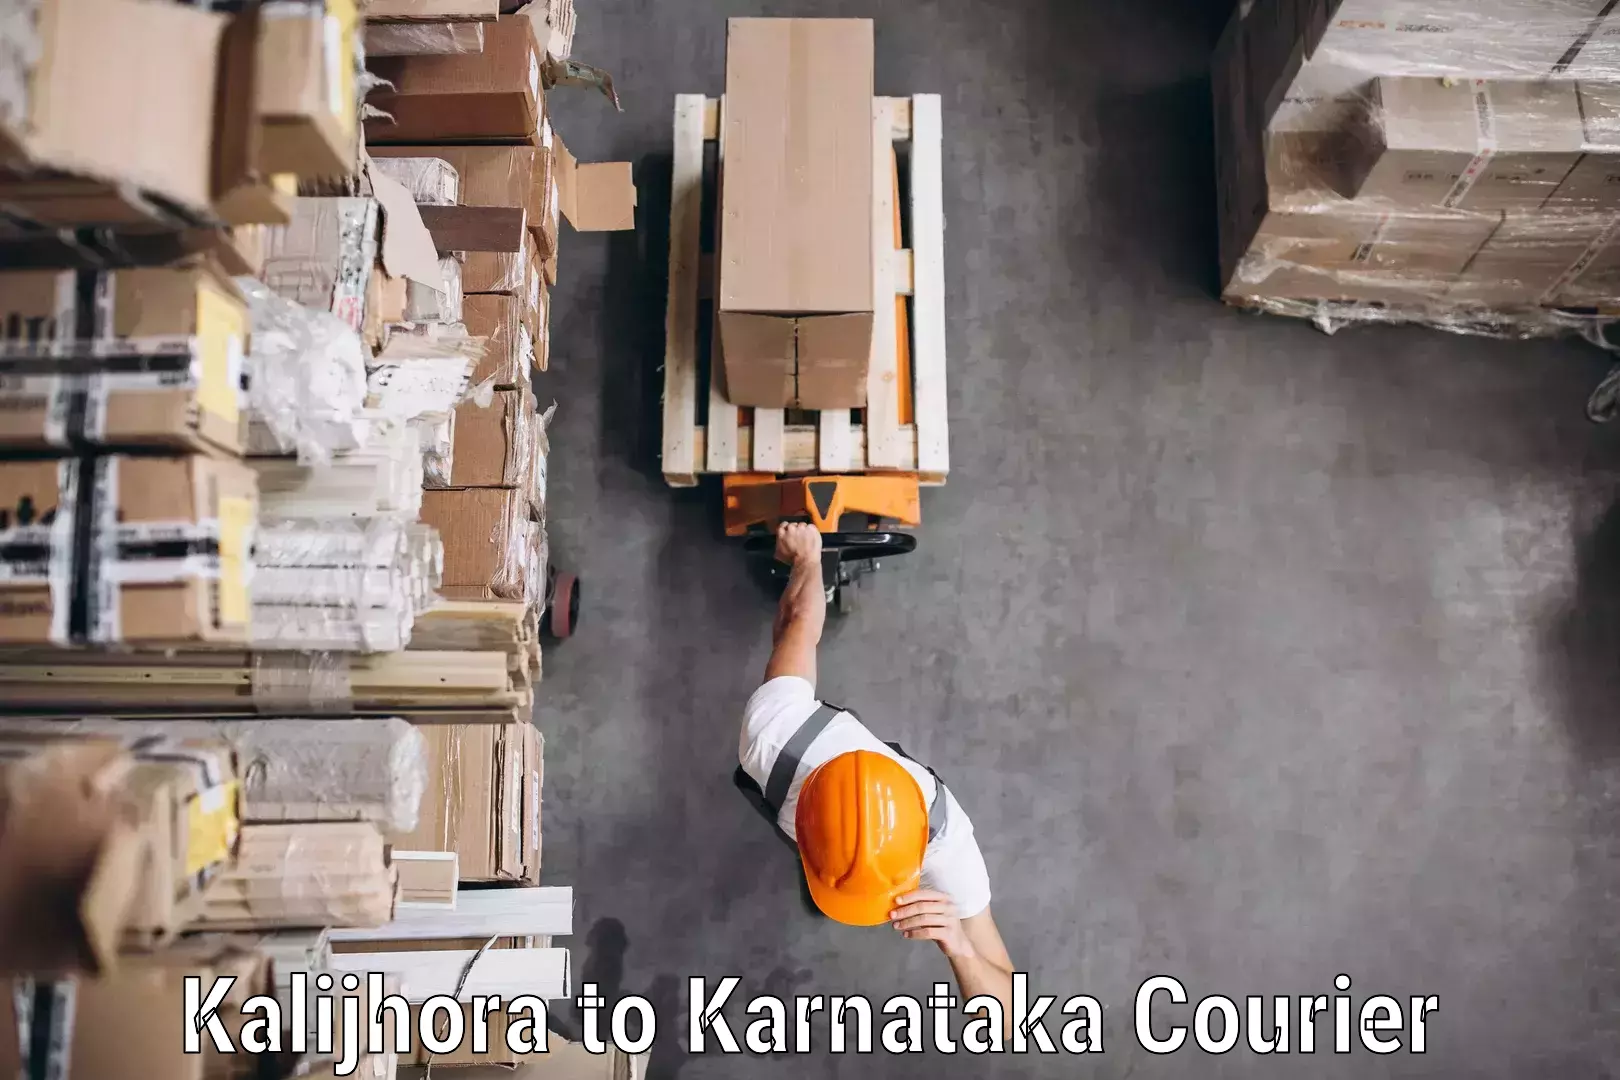 Regular parcel service Kalijhora to Karnataka